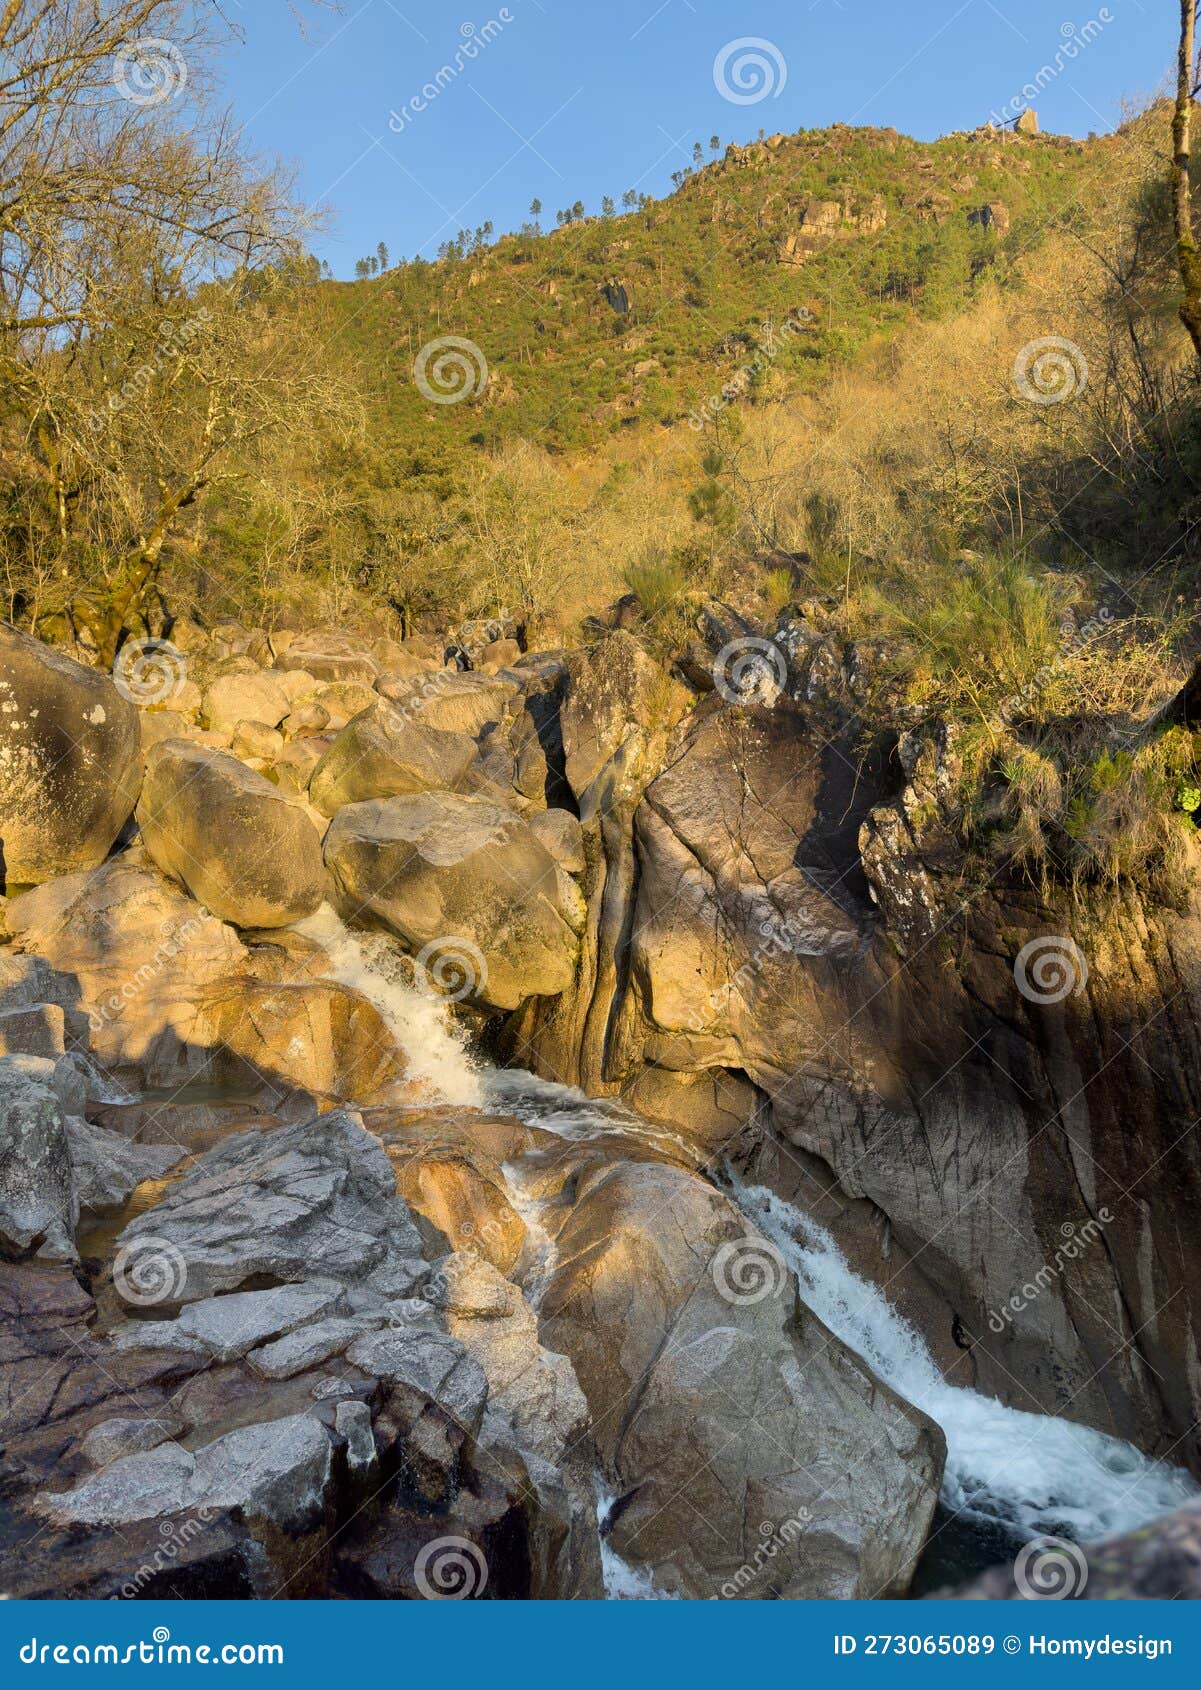 water stream near fecha de barjas waterfall